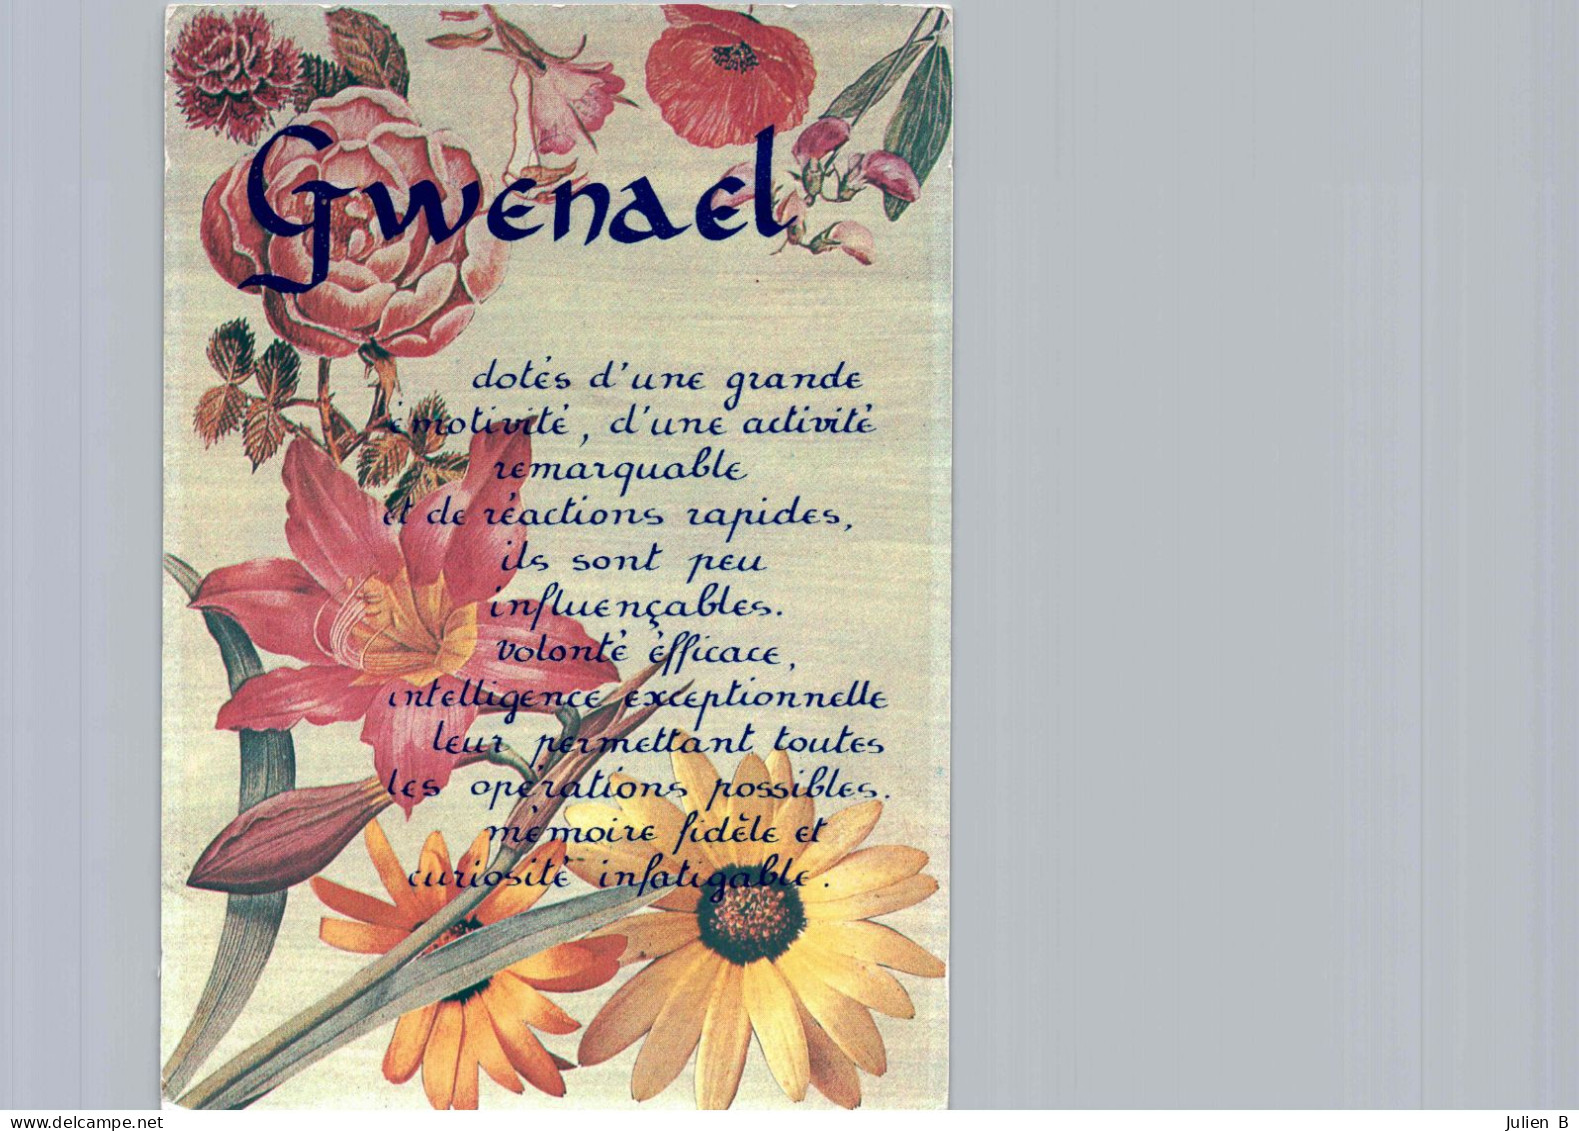 Gwenael, Edition ICDF - Firstnames